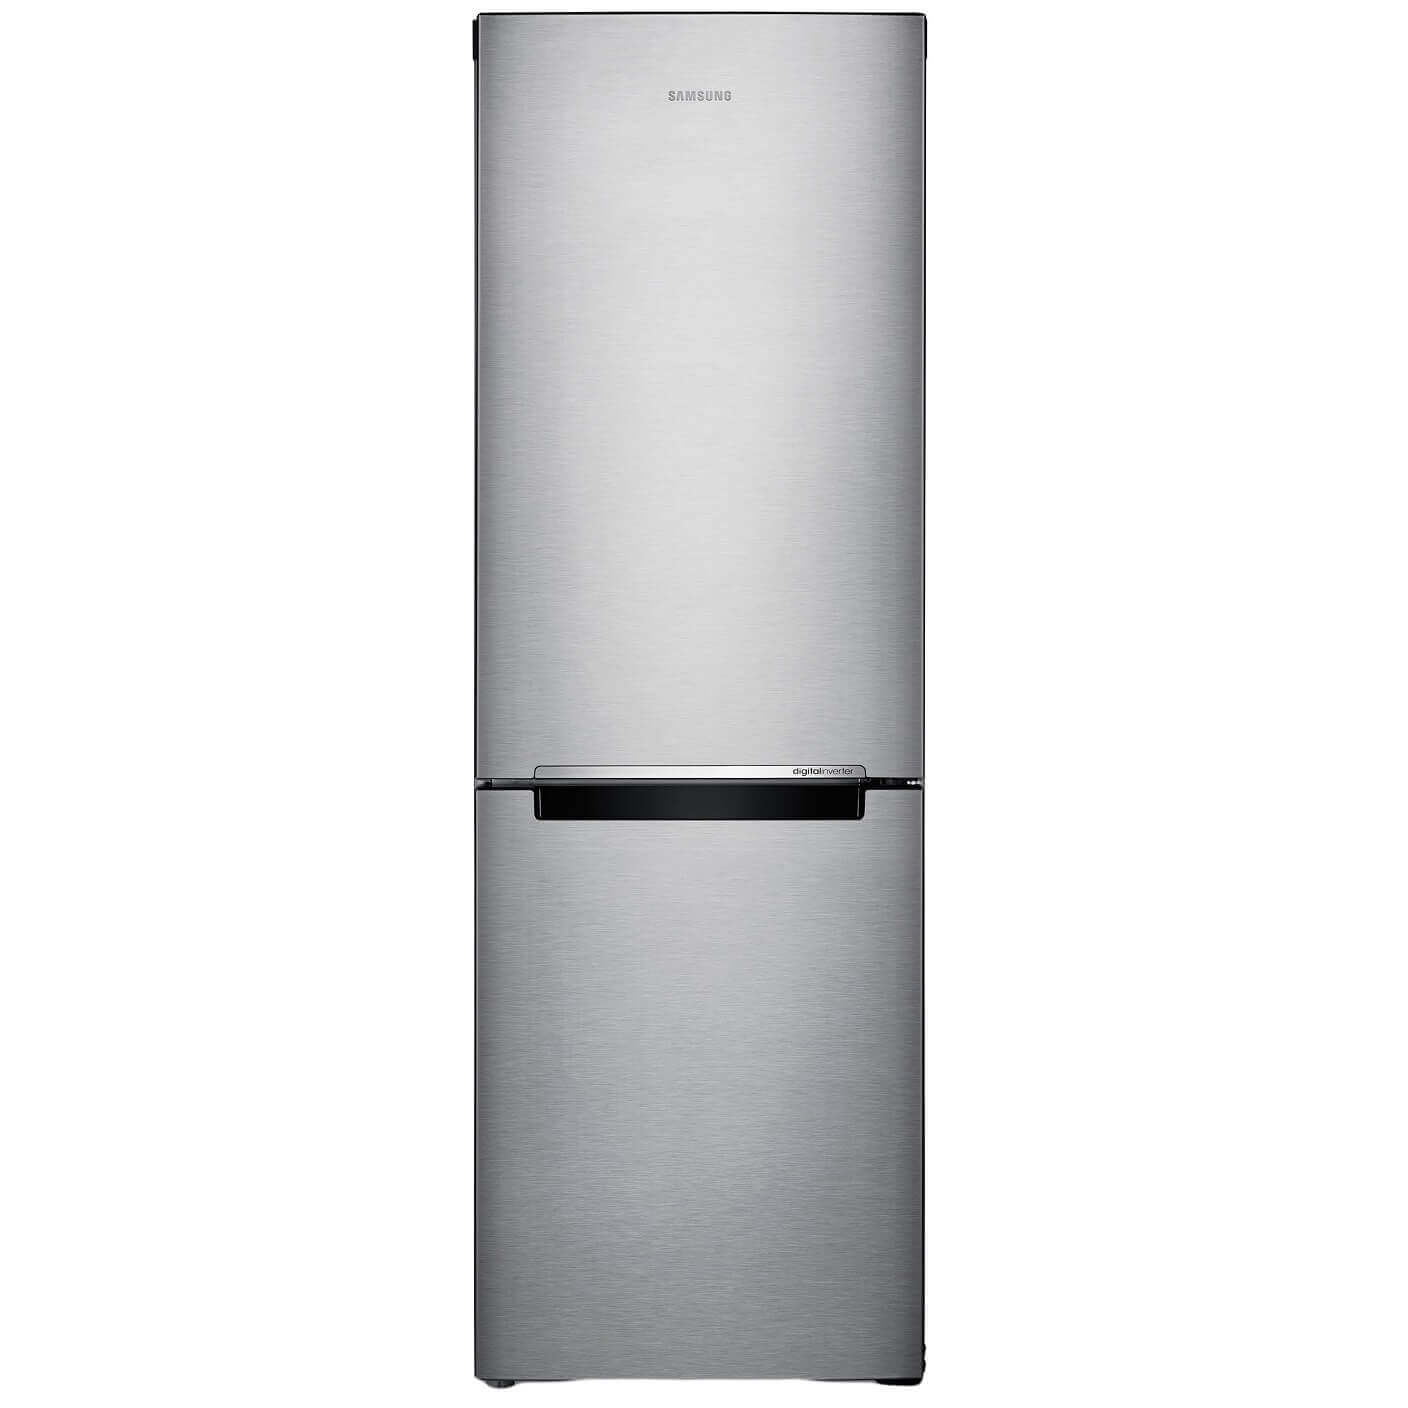 Combina frigorifica Samsung RB29FSRNDSA/EF, 290 l, Clasa A+, Argintiu